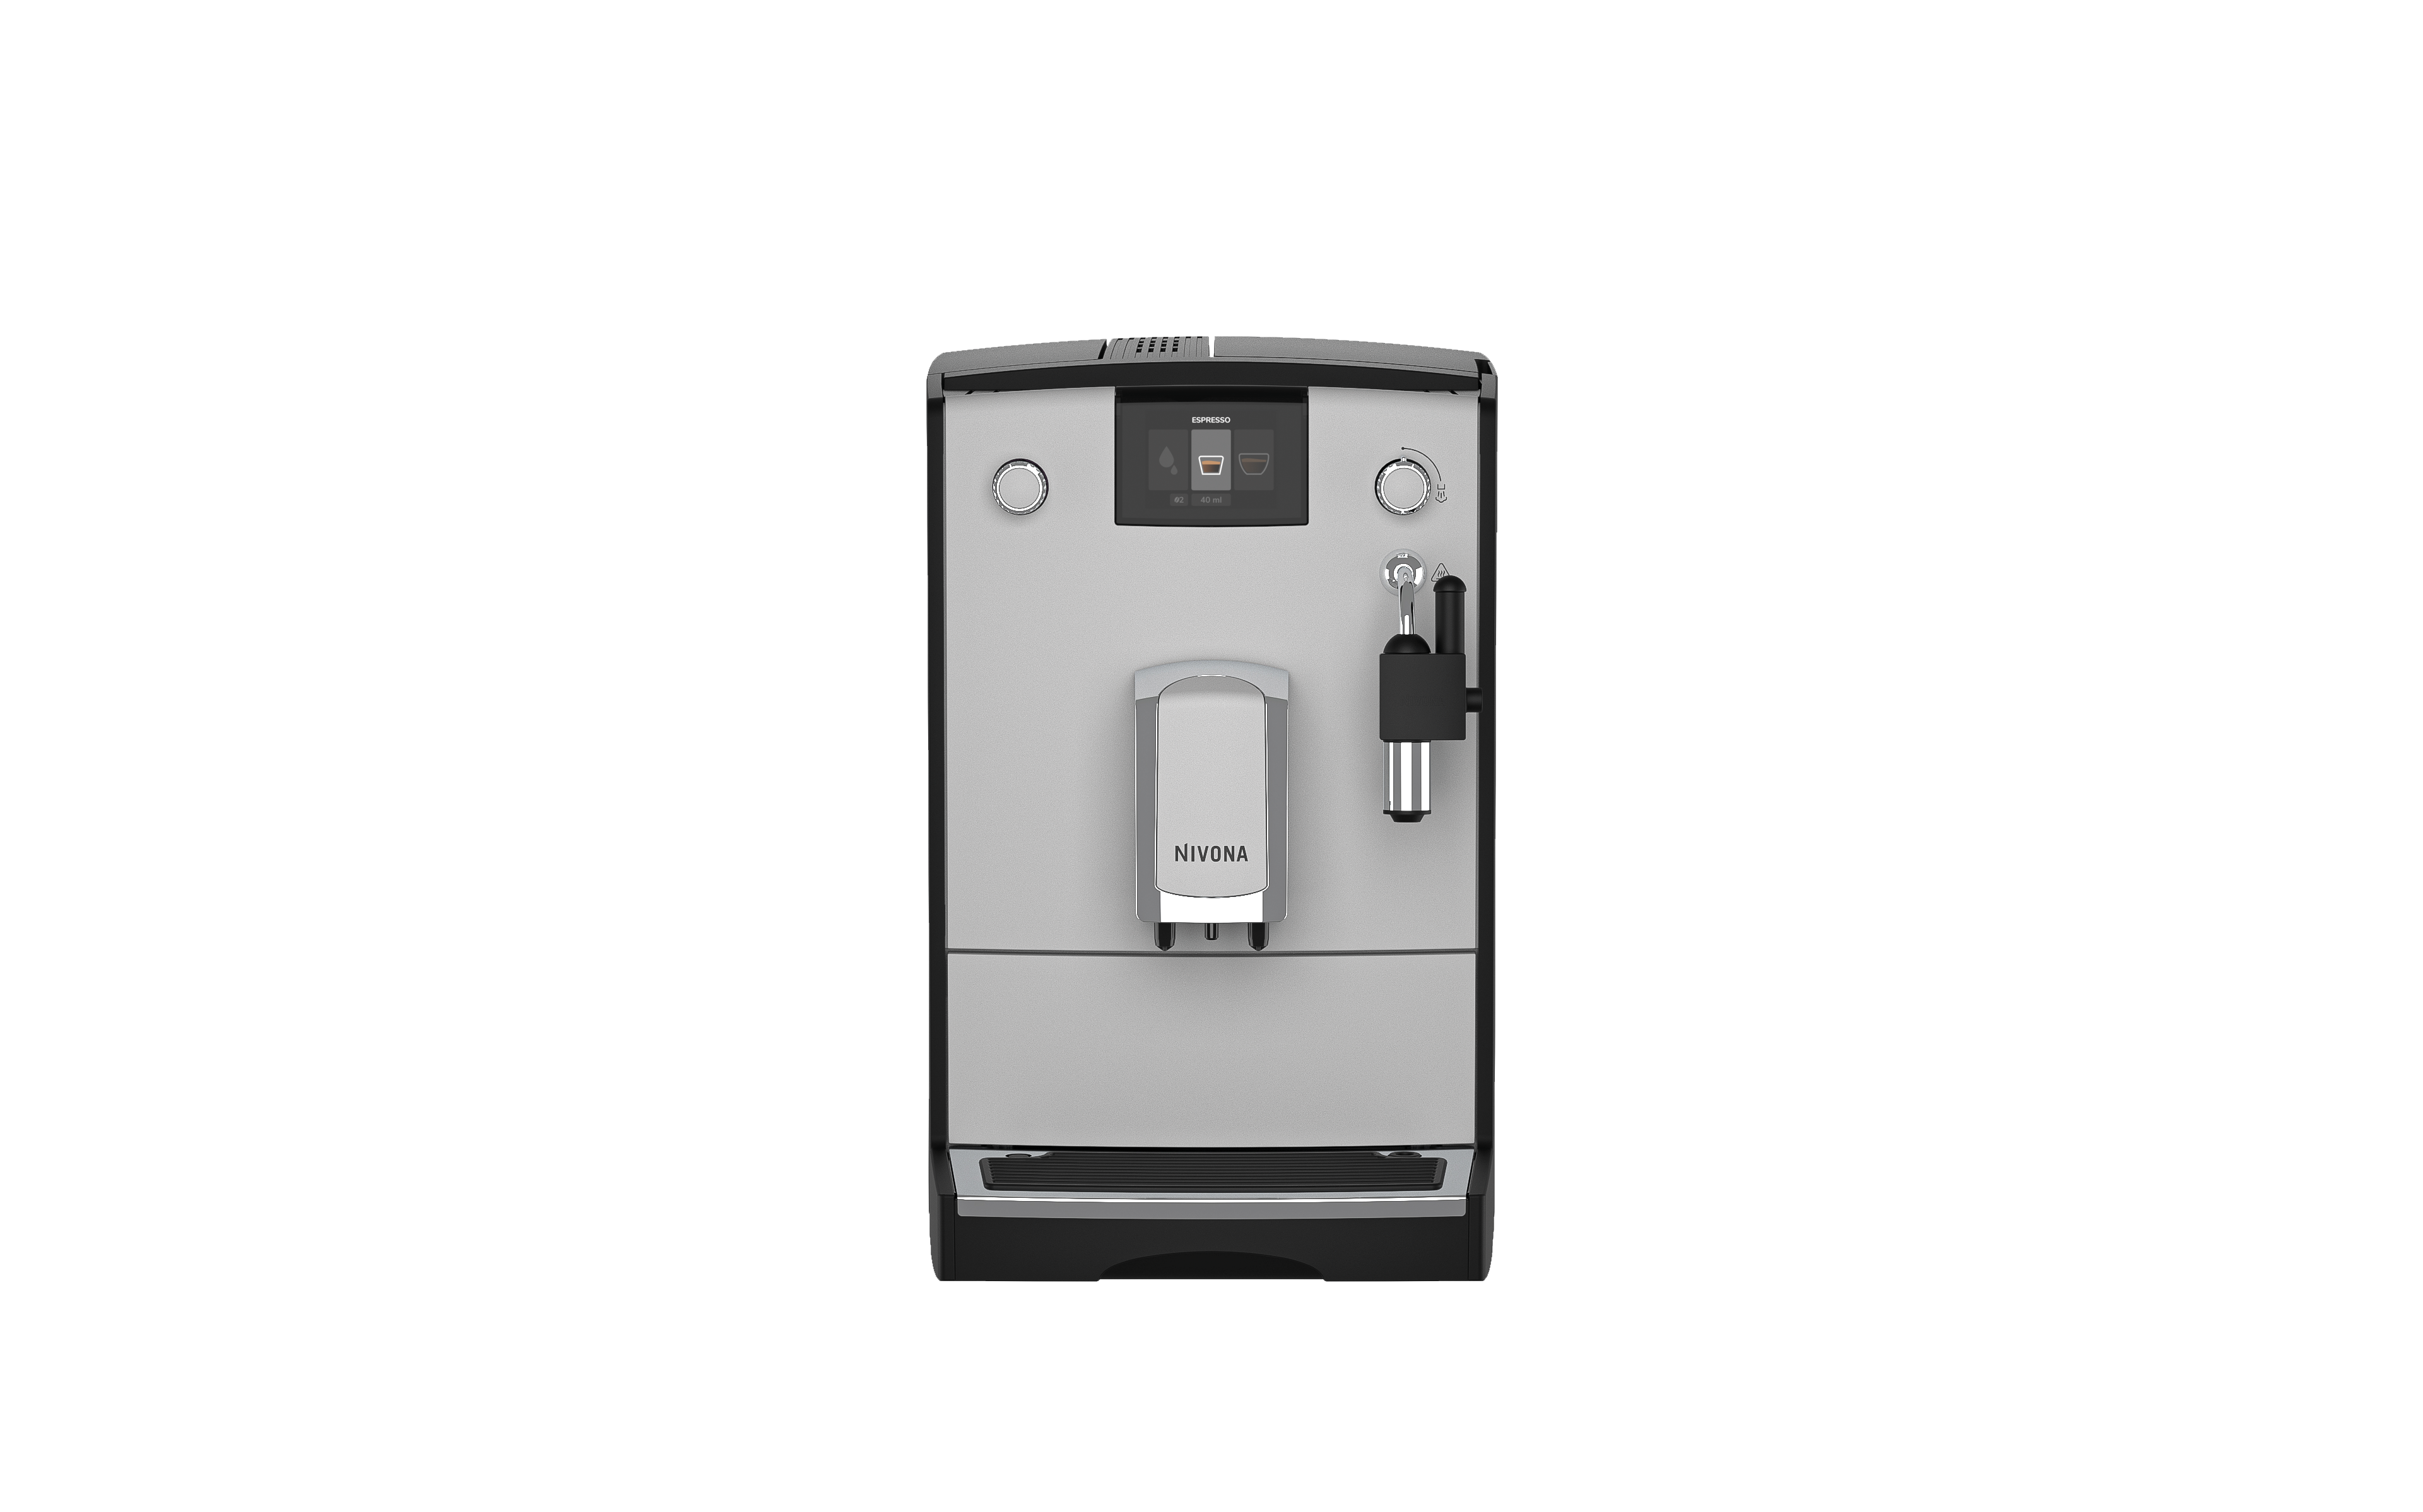 Кофемашина автоматическая NIVONA NICR 555 серебристая кофемашина автоматическая dr coffee h1 серебристая черная